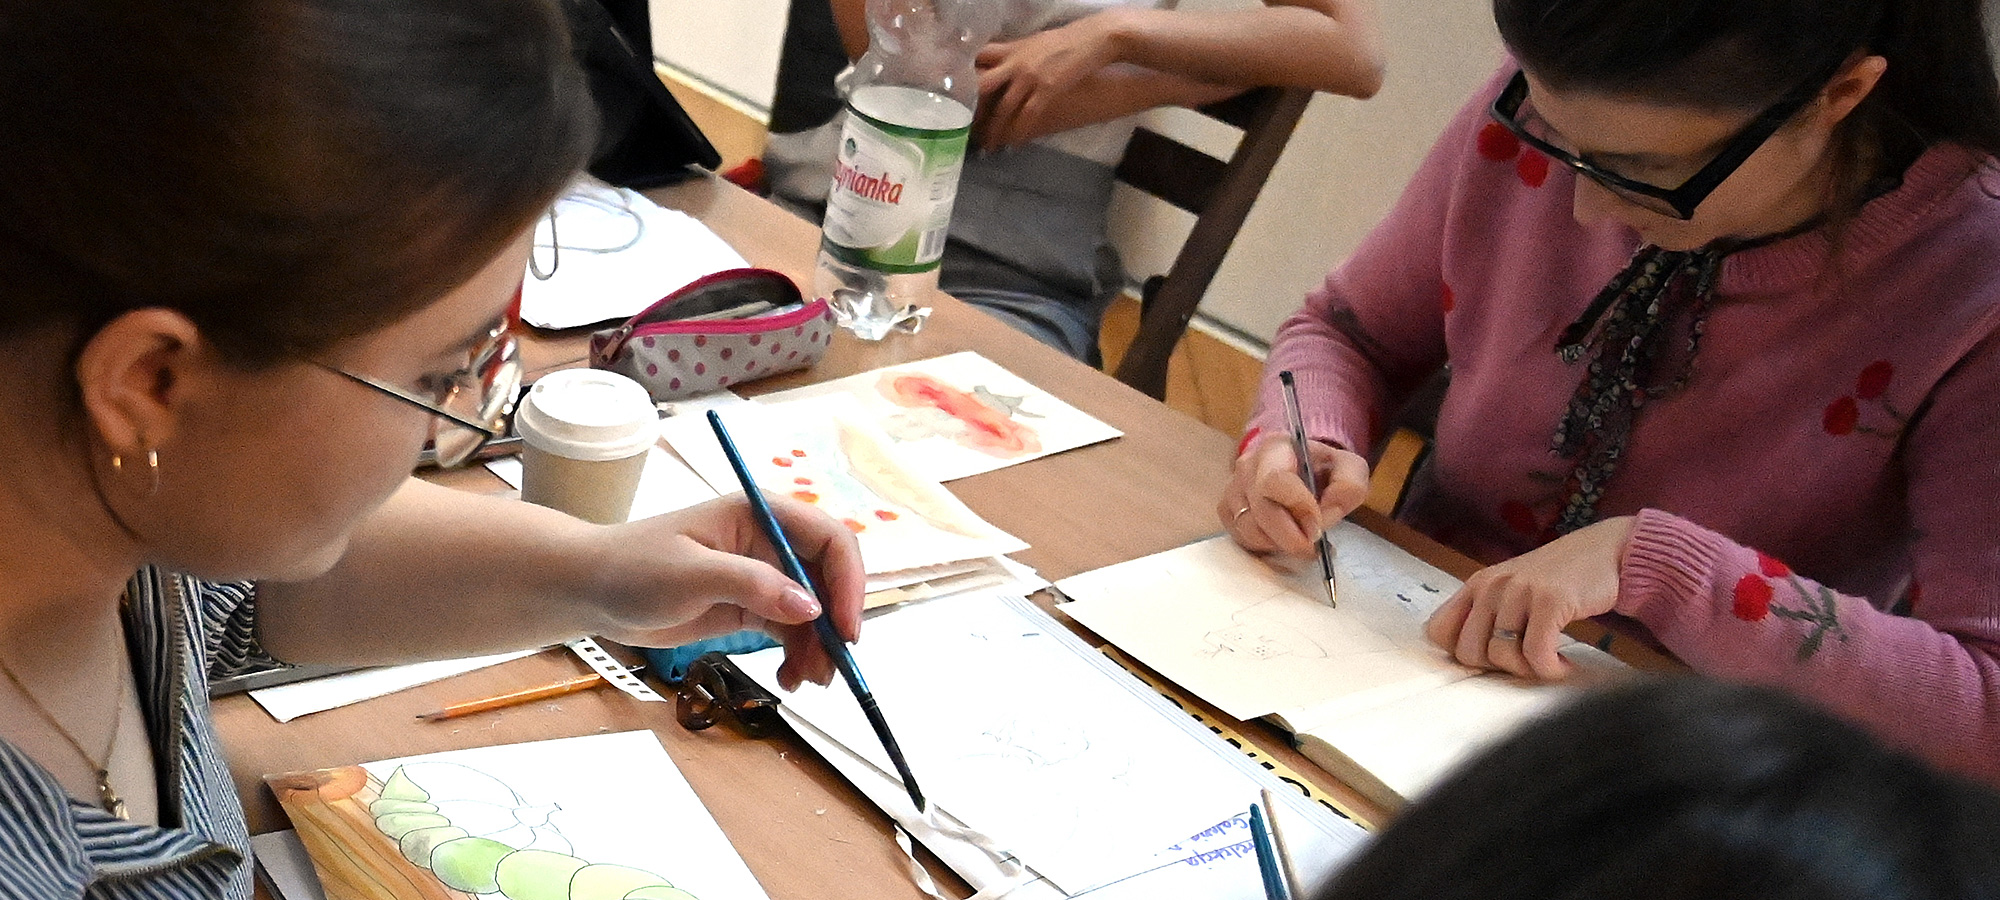 Dwie młode artystki- uczestniczki warsztatów podczas tworzenia ilustracji. Pomiędzy nimi na stole rozłożone różne przybory malarskie. Obie mają pędzle w dłoniach.